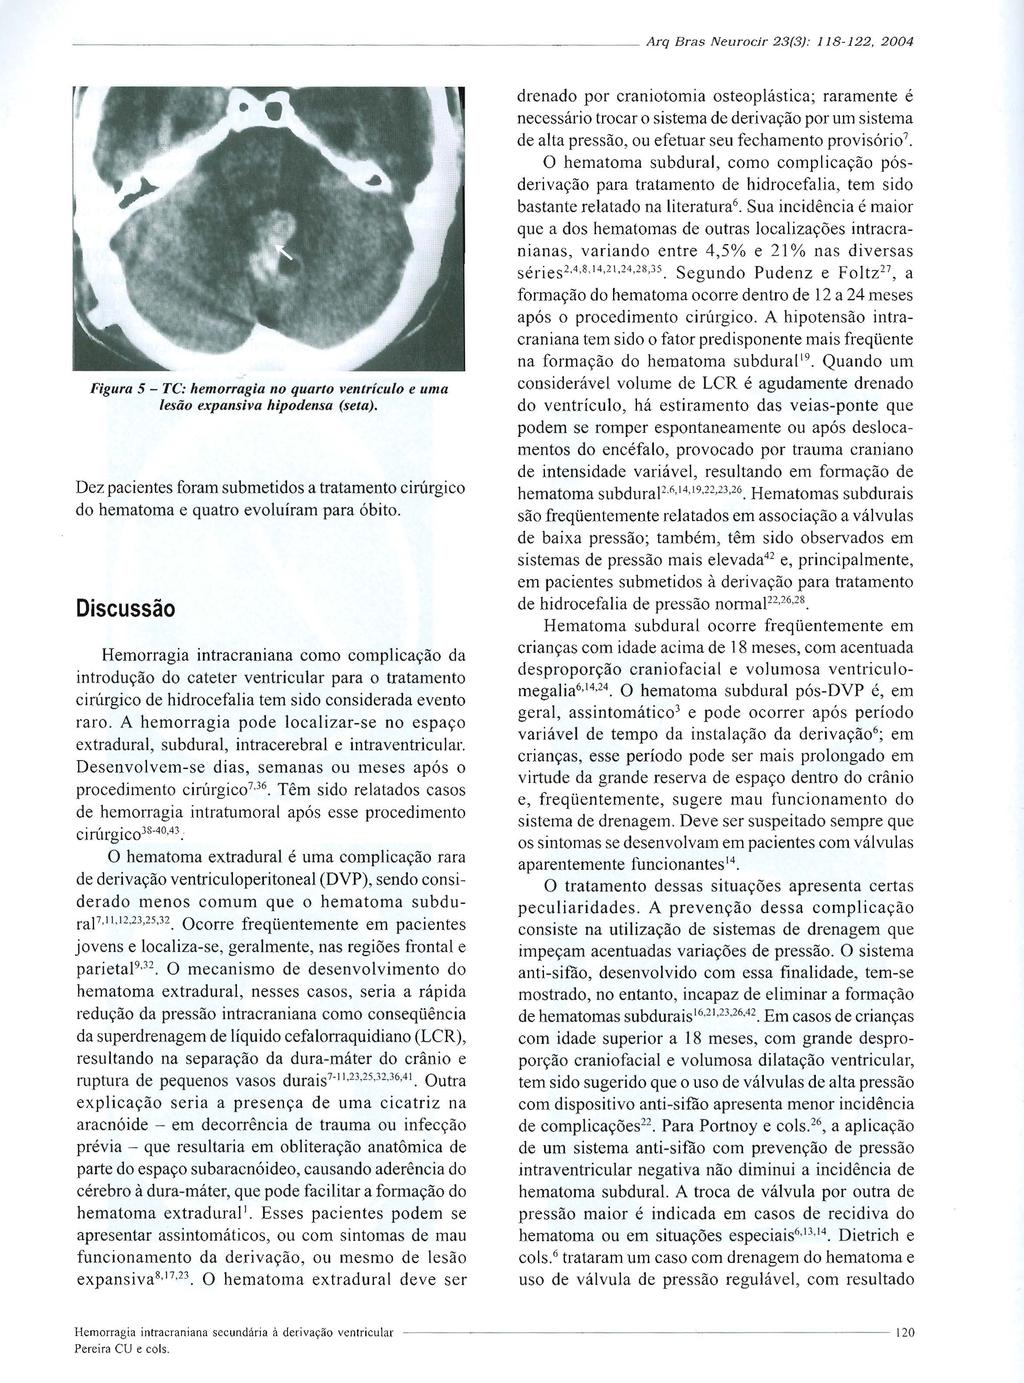 --------------------------- ---- Arq Bras Neurocir 23(3): 118-122. 2004 Figura 5 - TC: hemorragia no quarto ventrículo e uma lesão expansiva hipodensa (seta).